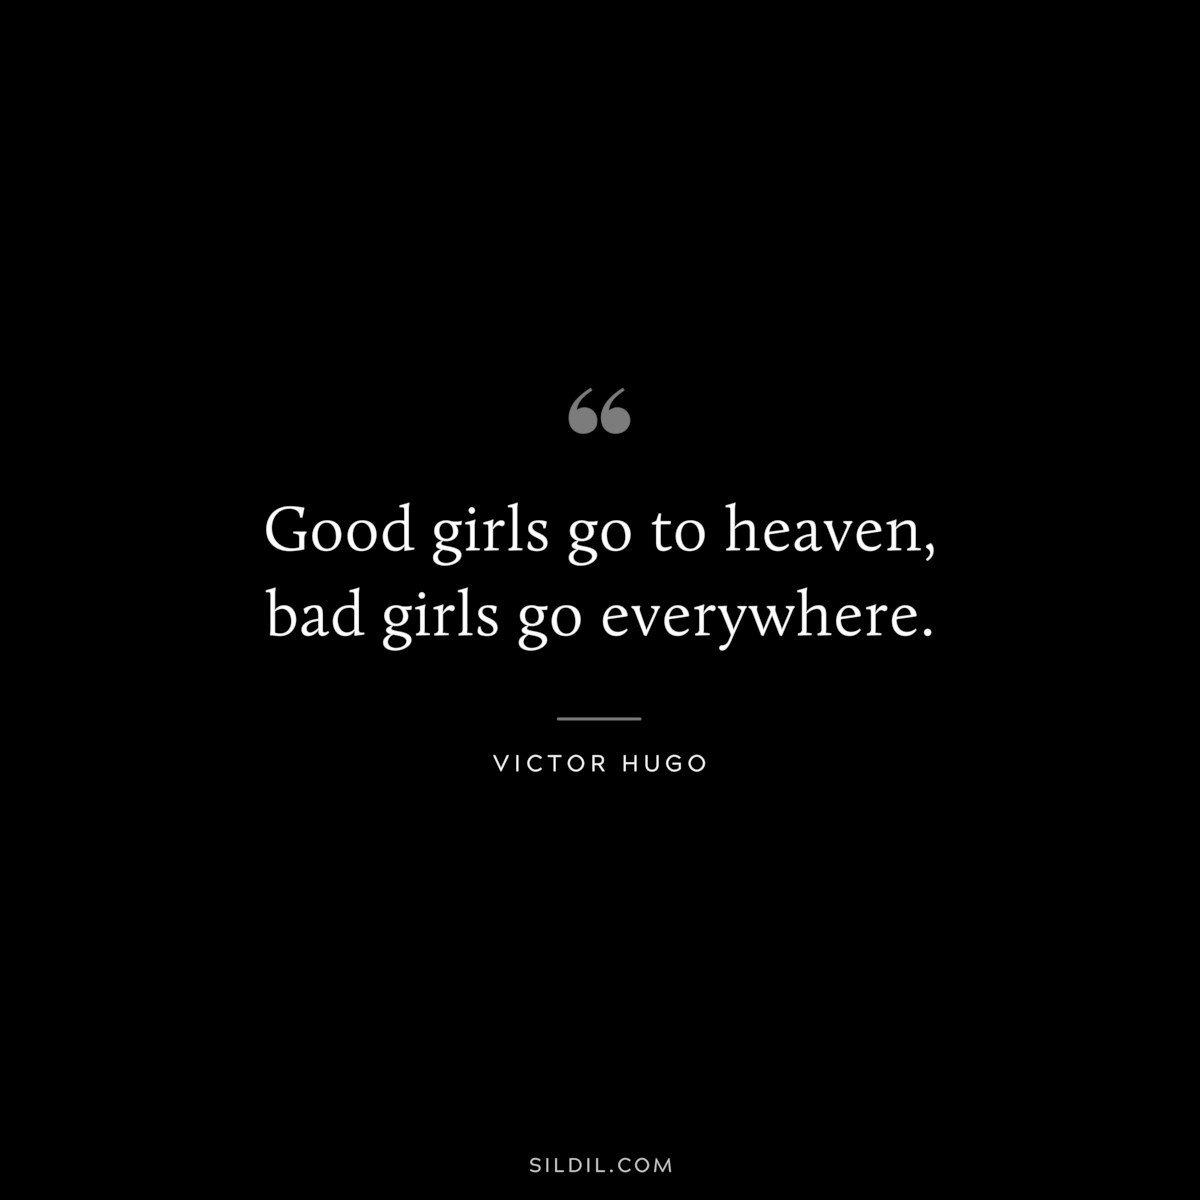 Good girls go to heaven, bad girls go everywhere. ― Mae West